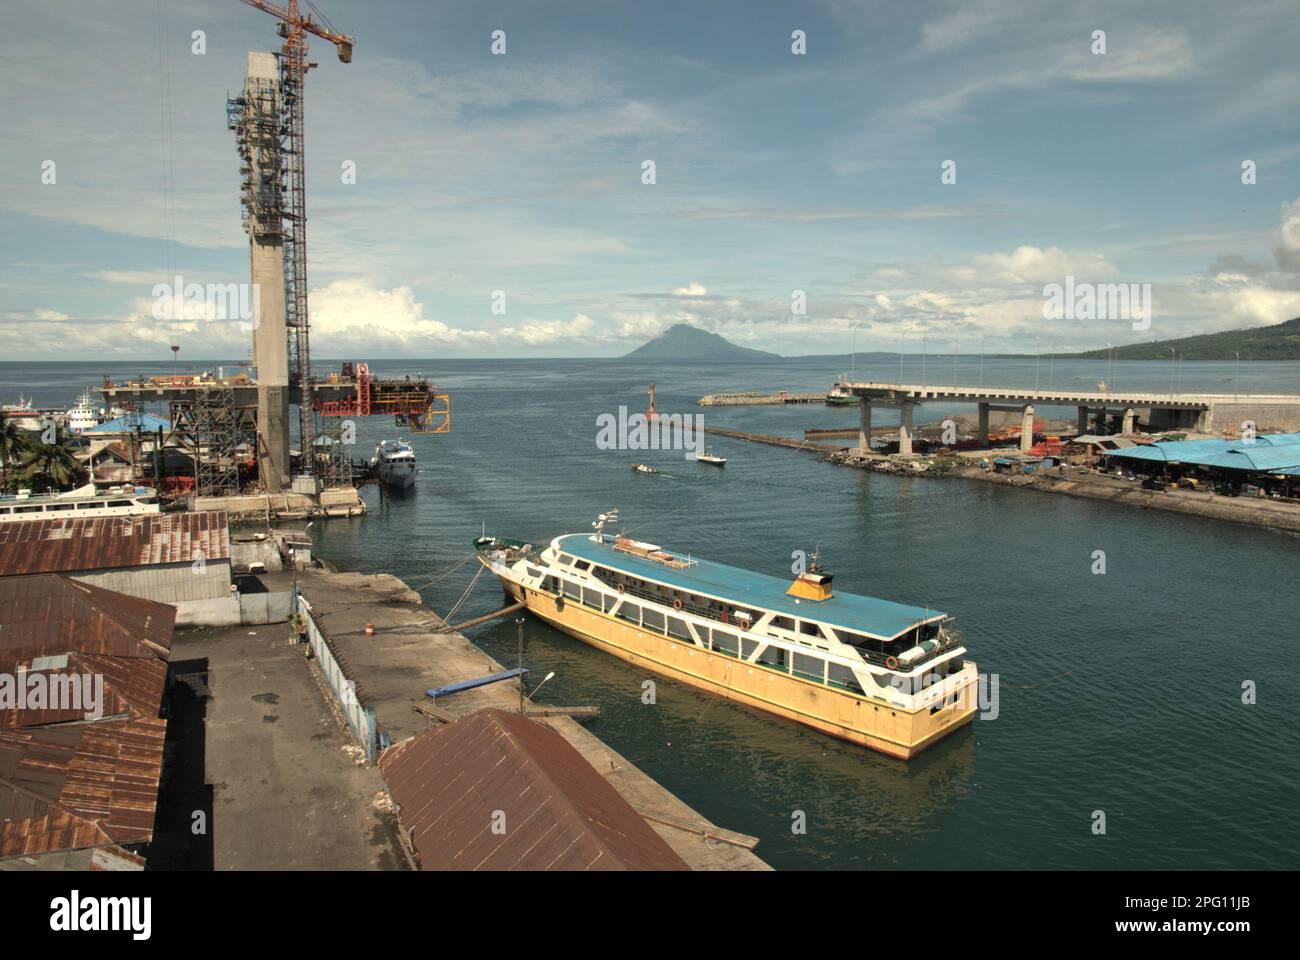 Vue sur la baie de Manado avec le mont Manado Tua en premier plan d'un ferry et d'une partie du pont Soekarno en construction dans la zone côtière de Manado, au nord de Sulawesi, en Indonésie. Banque D'Images